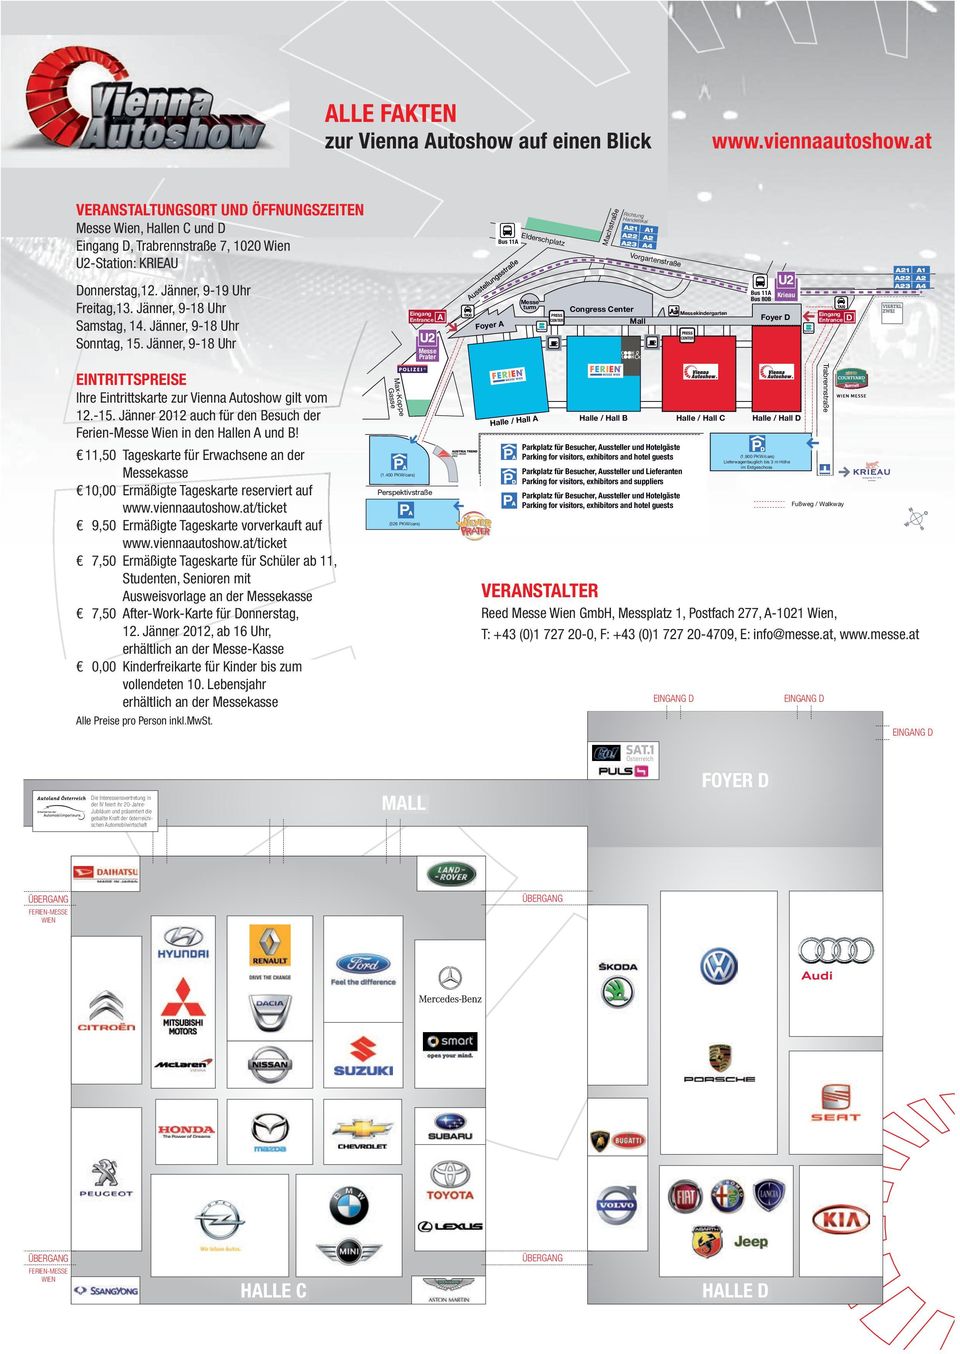 at/ticket 9,50 Ermäßigte Tageskarte vorverkauft auf www.viennaautoshow.